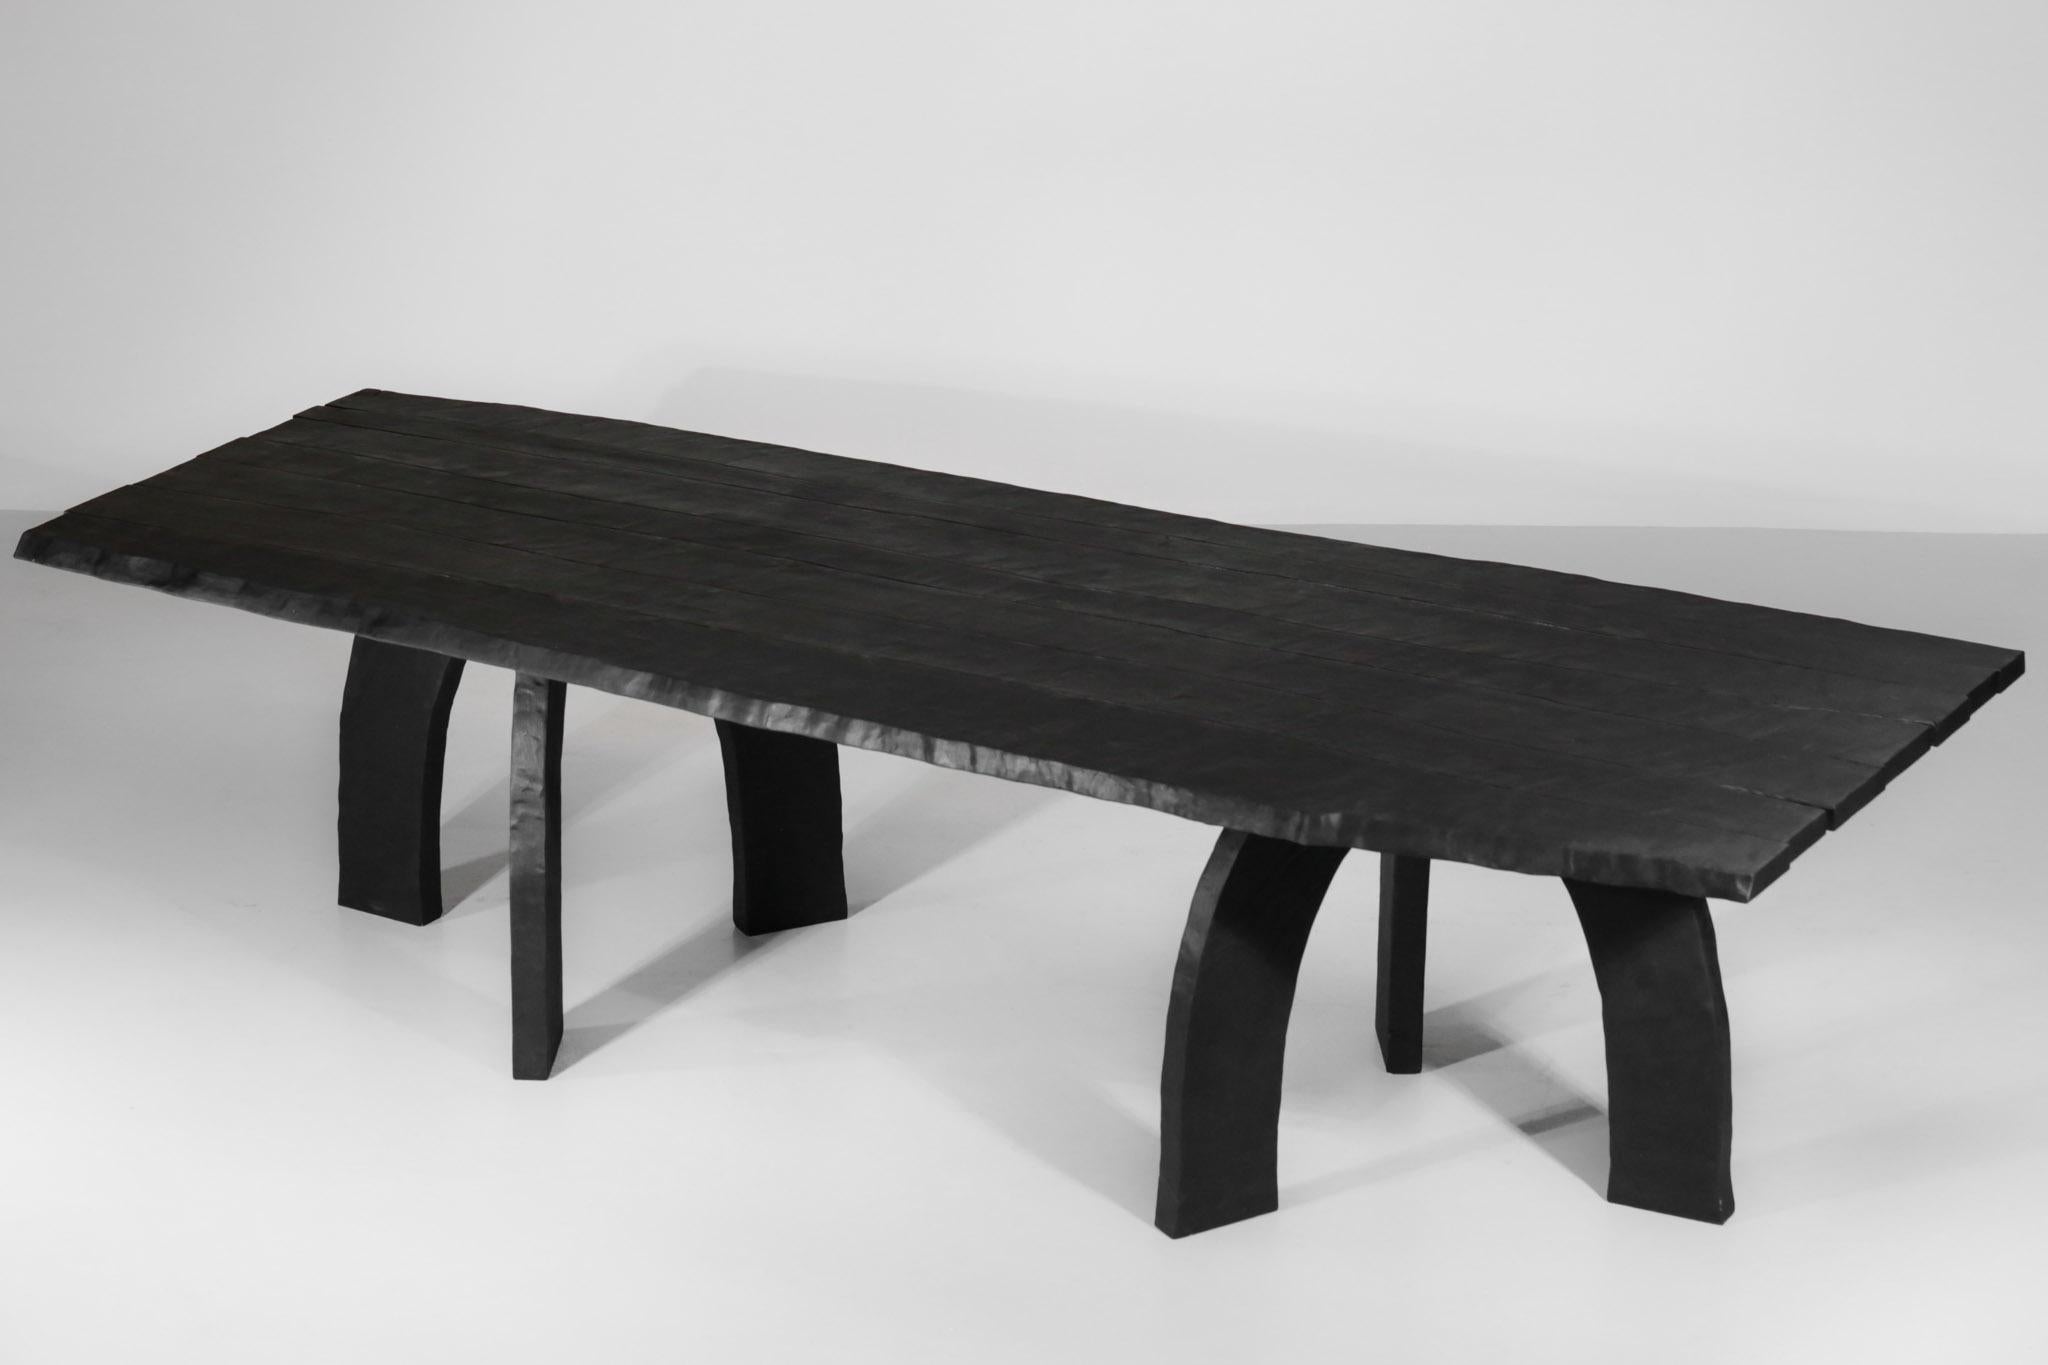 Großer Esstisch aus gebranntem Massivholz, vollständig von dem Kunsttischler Vincent Vincent entworfen und hergestellt.
Jeder Tisch wird in den Werkstätten in Lyon aus massivem Buchenholz vollständig von Hand gefertigt, wobei auf Qualität, Komfort